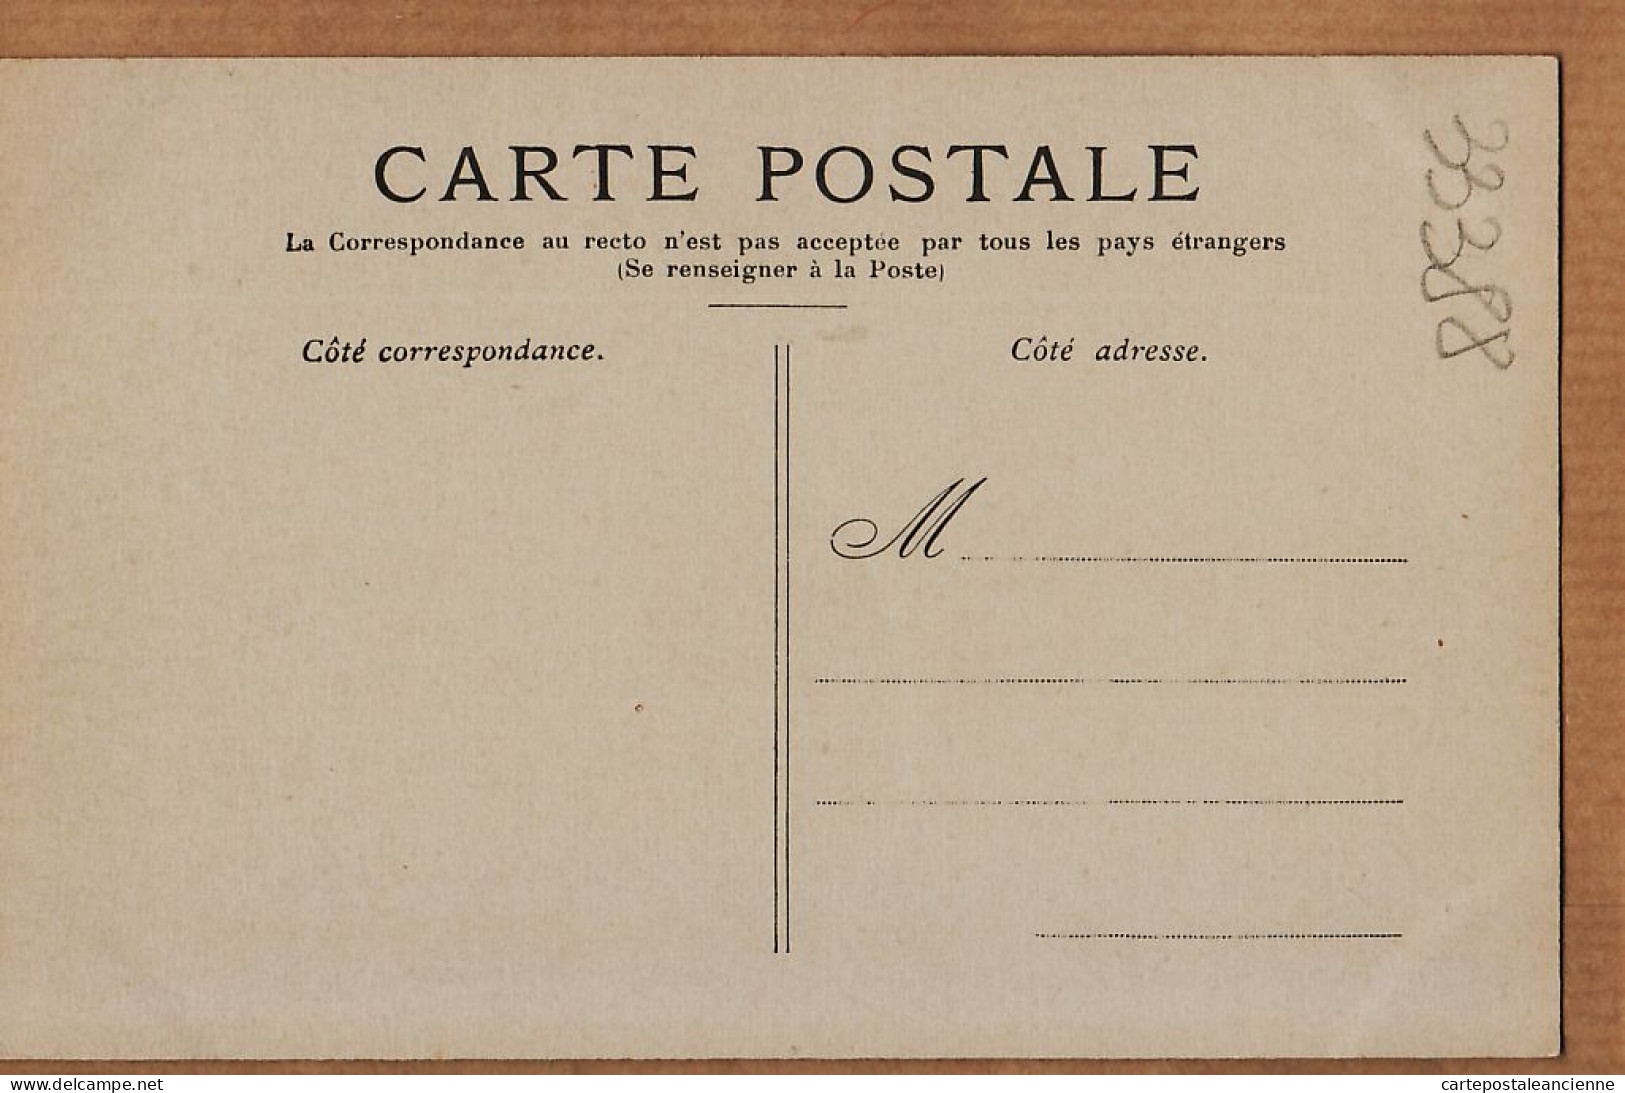 24133 /⭐ ◉  PARIS III Le Conservatoire Des ARTS Et METIERS ( Sans Automobiles ) 1890s Etat:PARFAIT - Distrito: 03